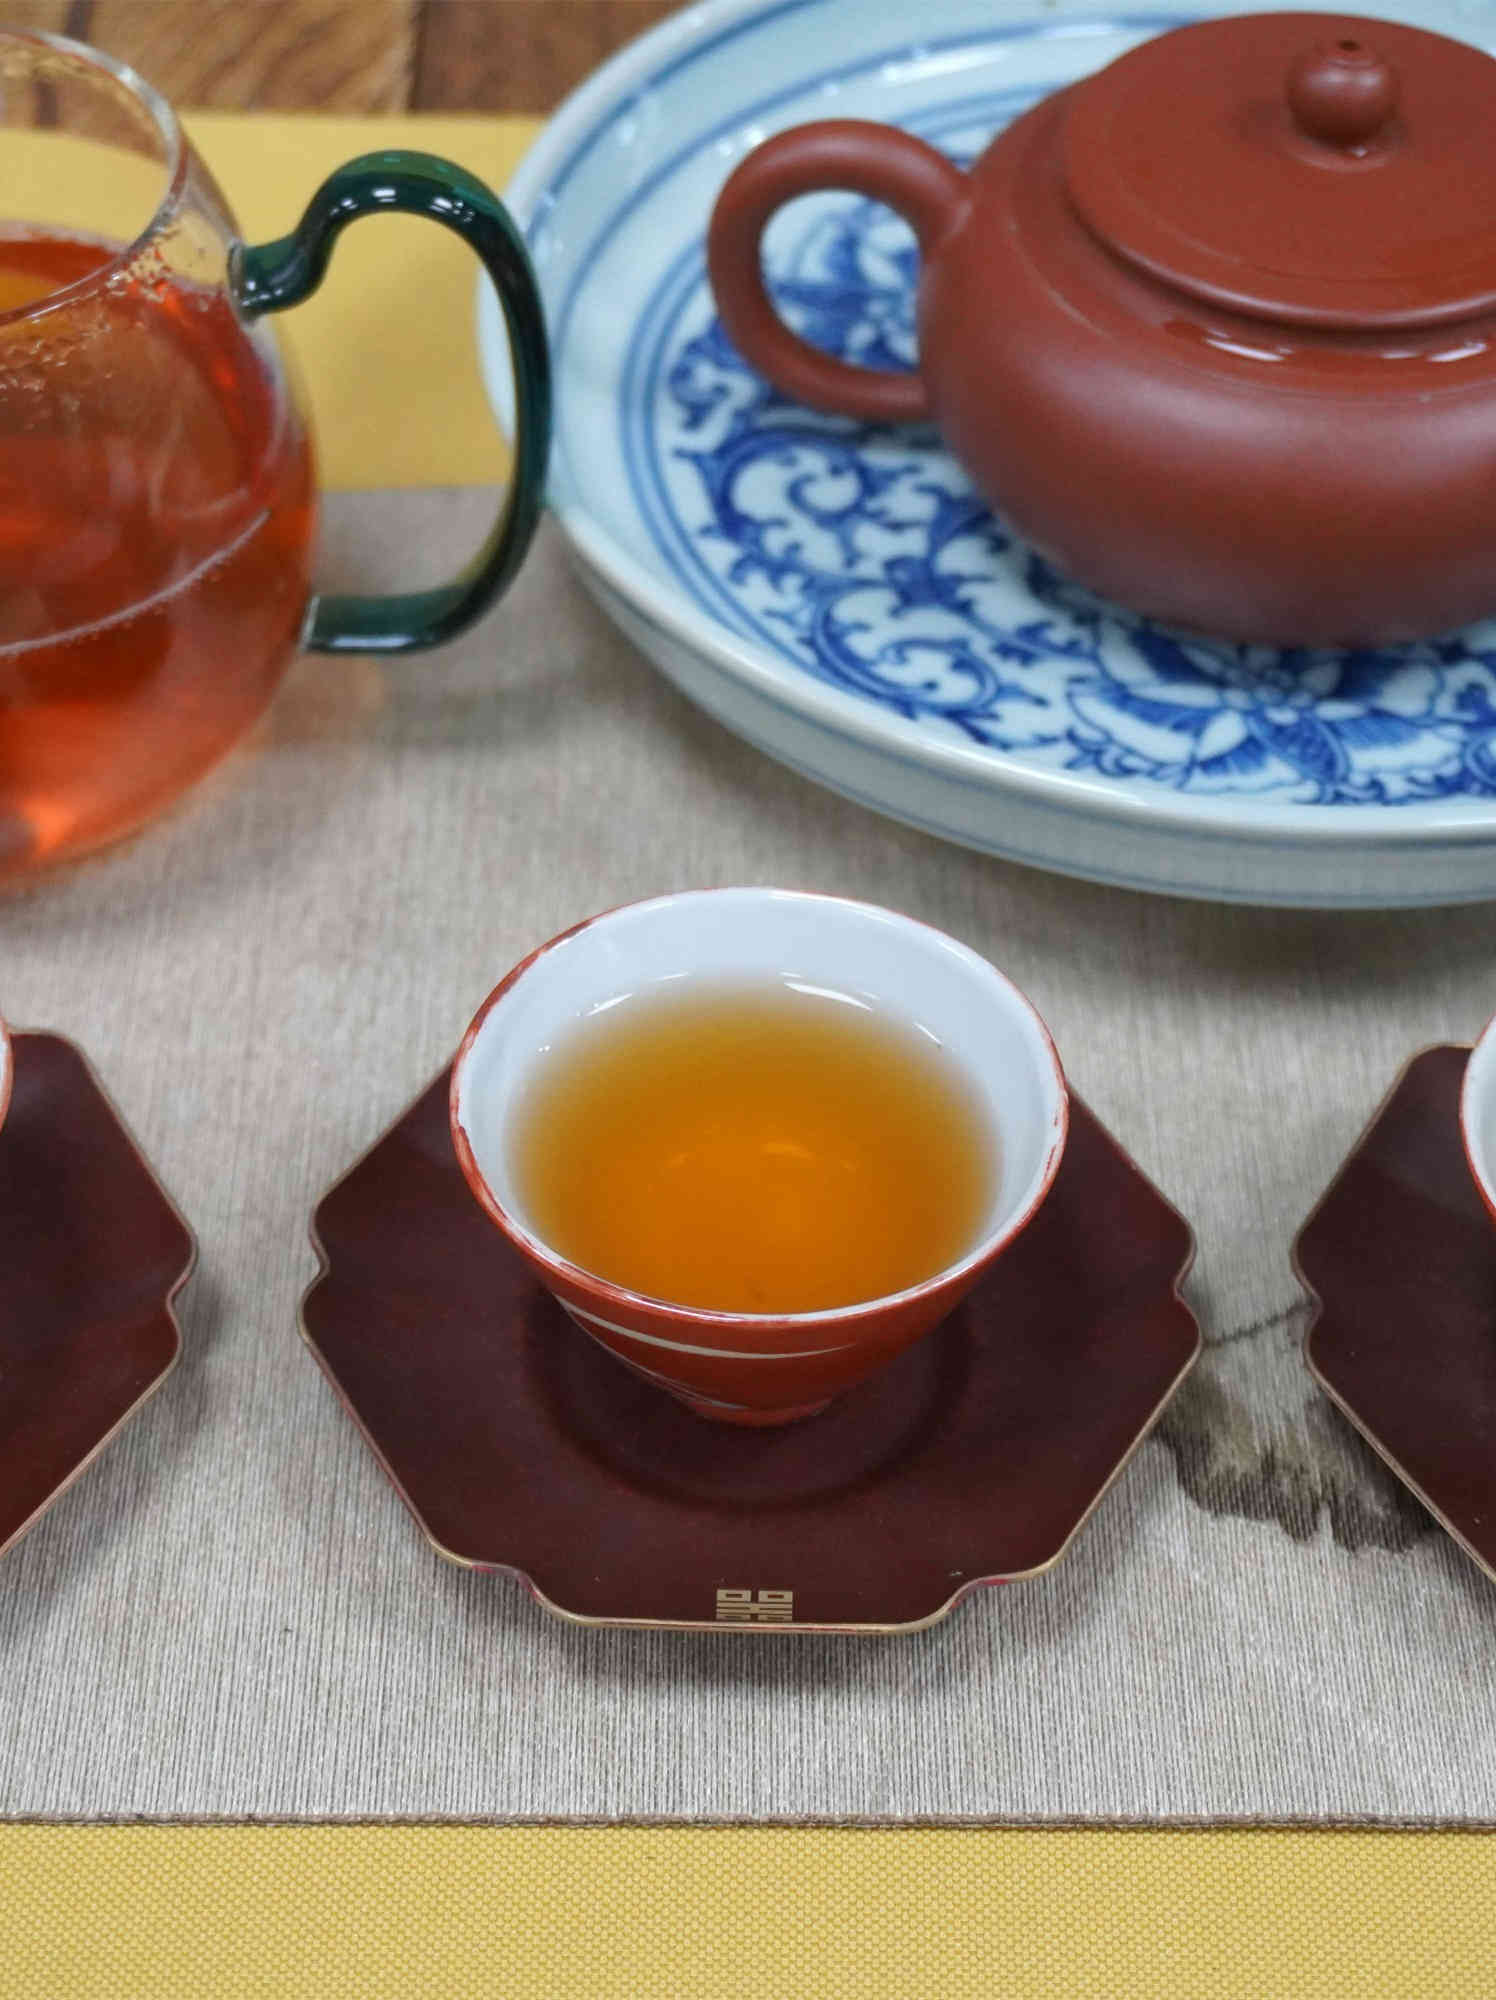 普洱茶十大知名品牌中，这6大普洱品牌的中期茶很划算！建议收藏